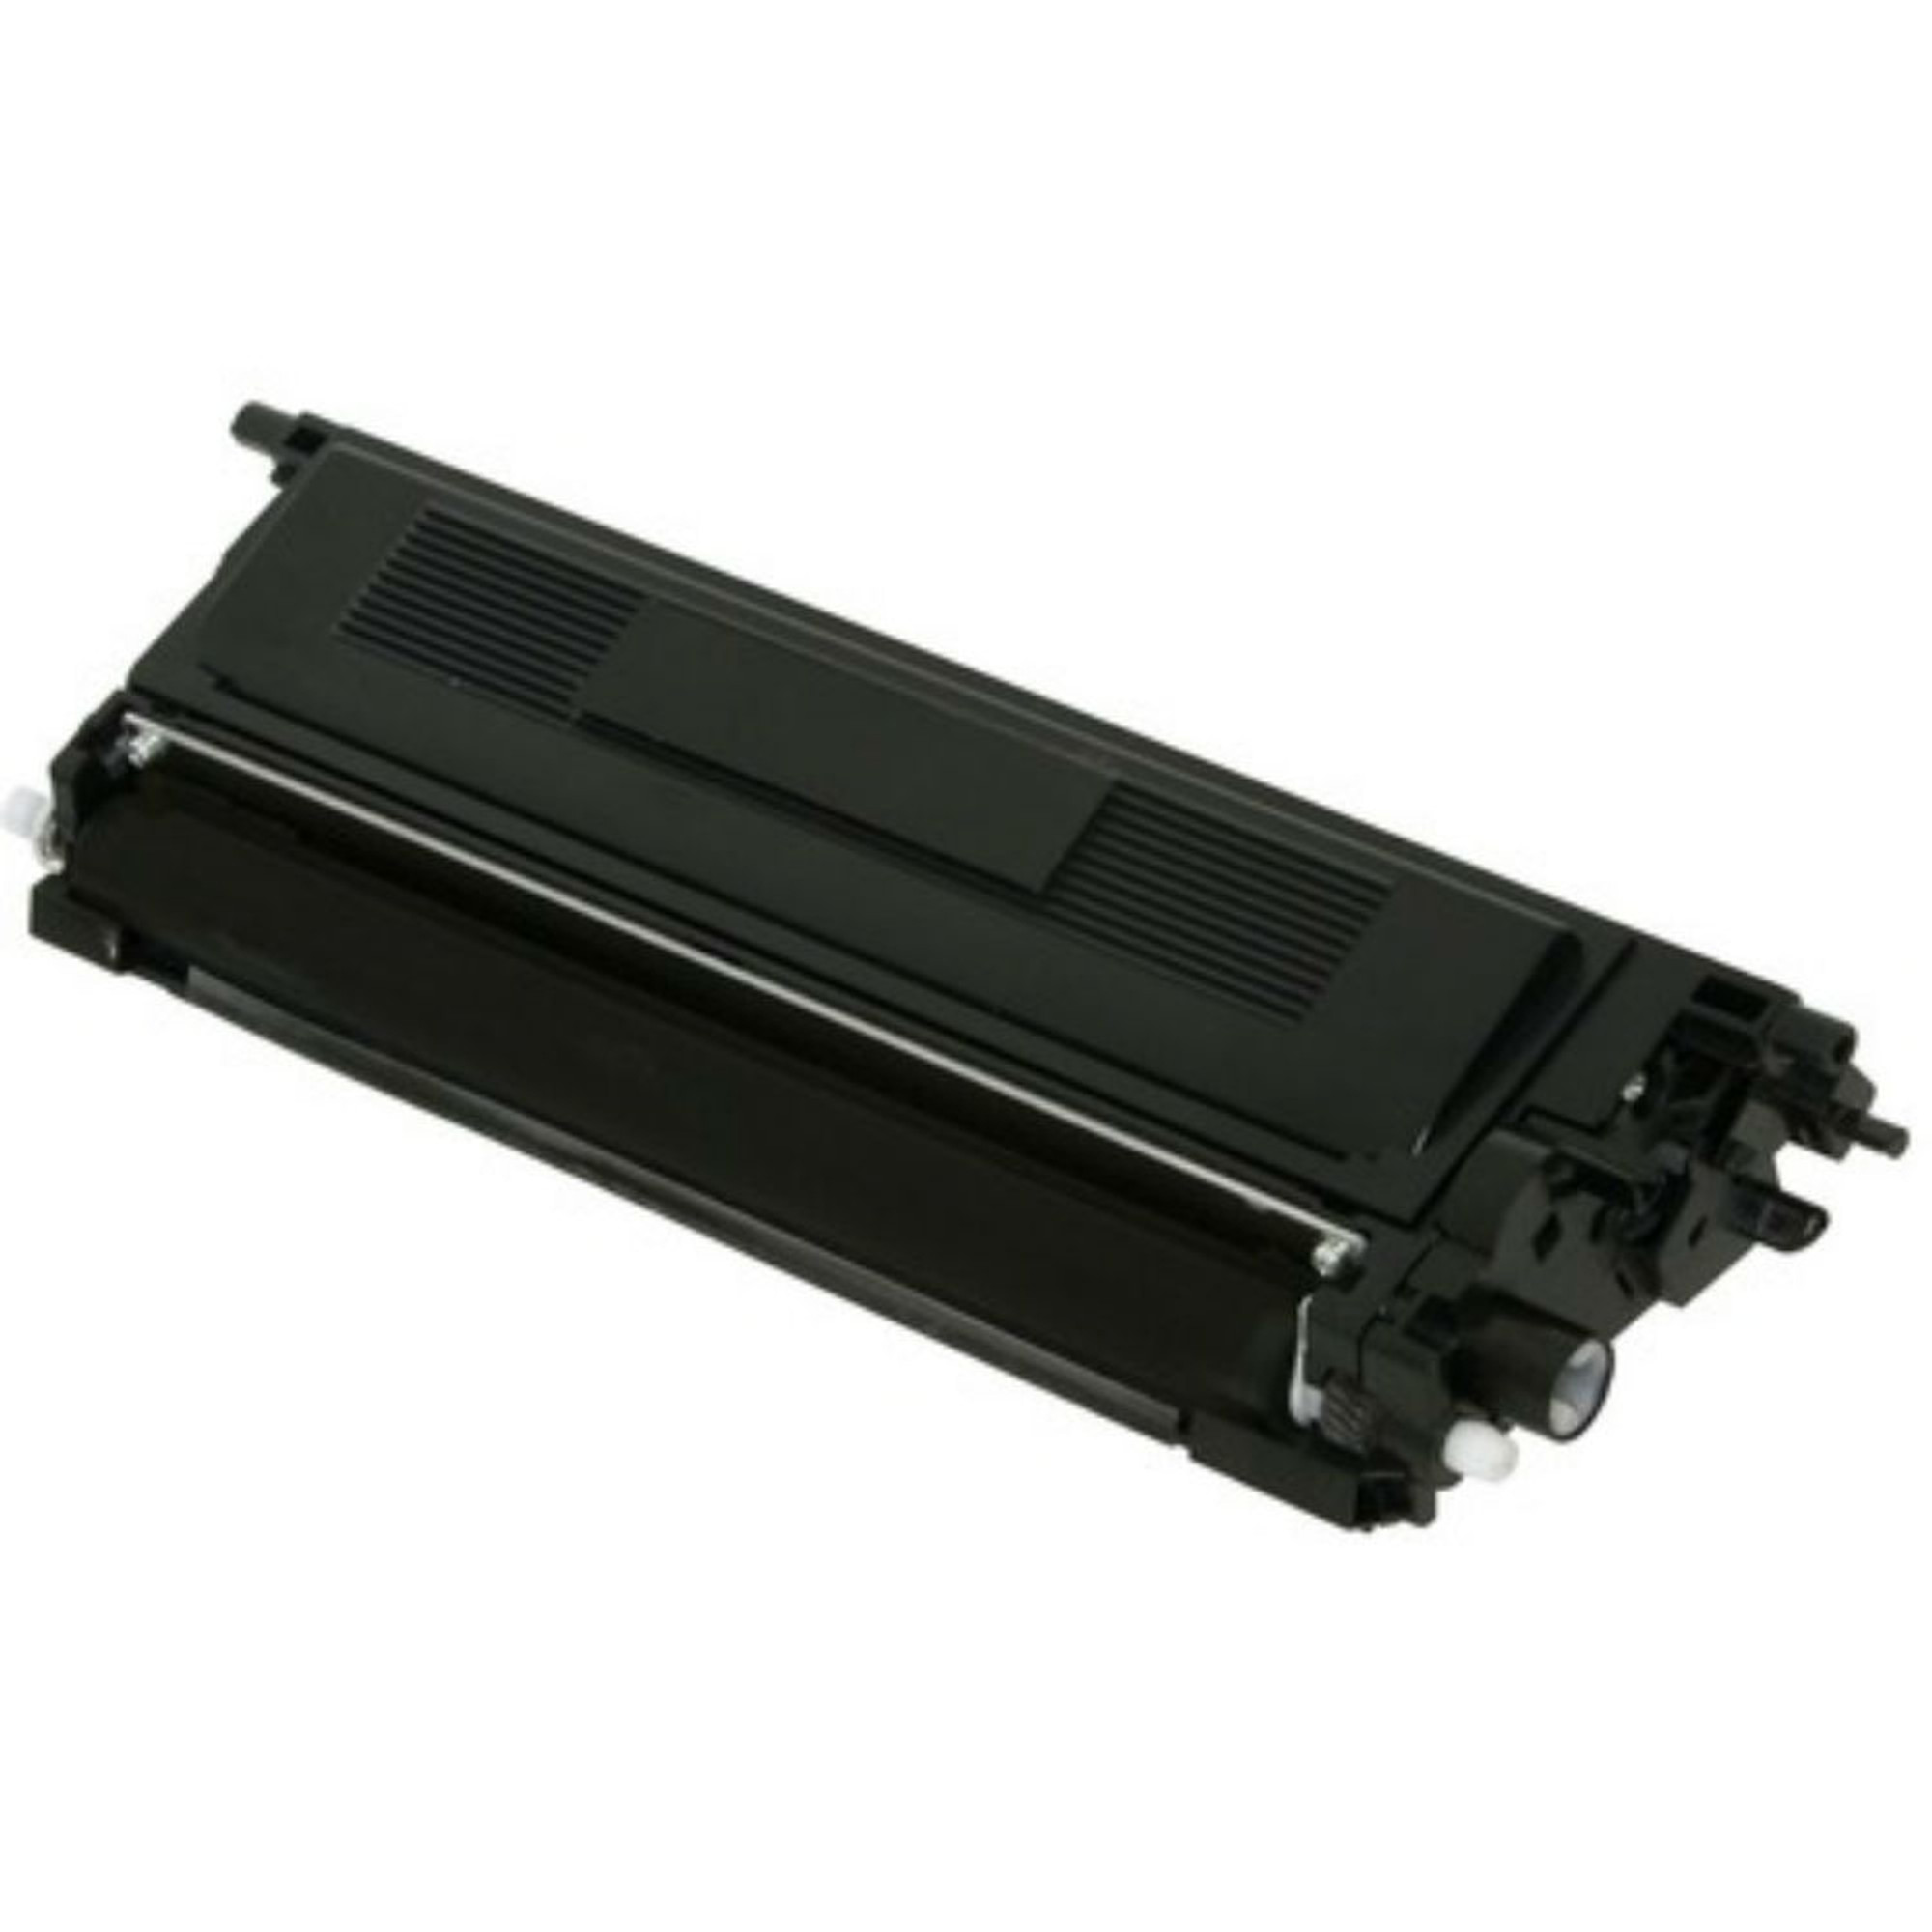 TN-247Y, Laser Printer Supplies